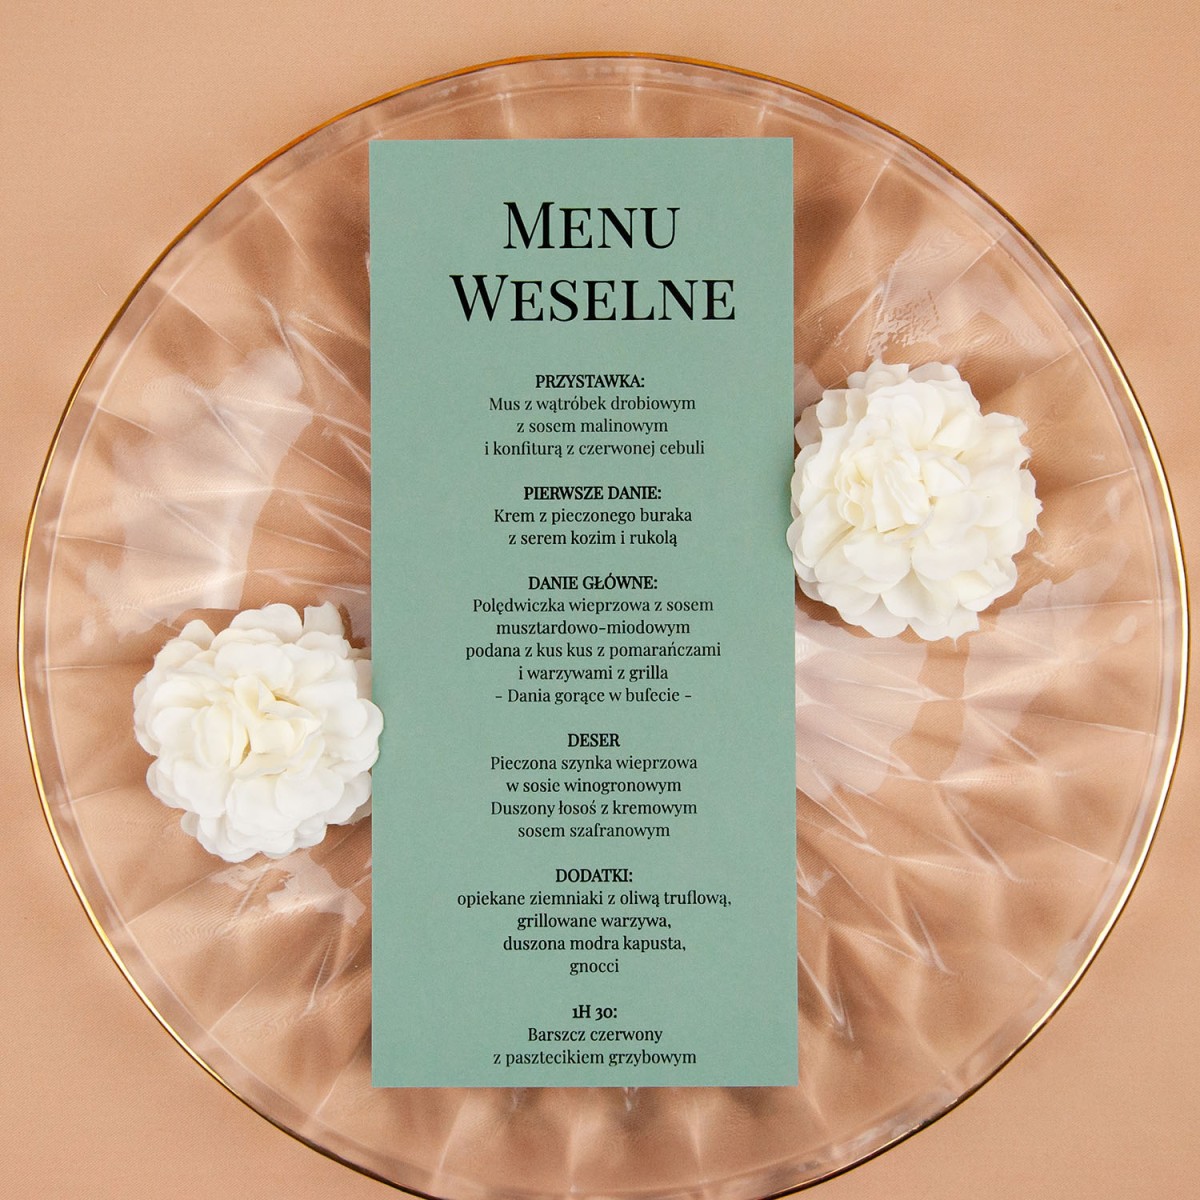 Minimalistyczne menu jednokartowe do położenia na talerzu lub stole - Unity Pistachio, Royal Pistachio - PRÓBKA